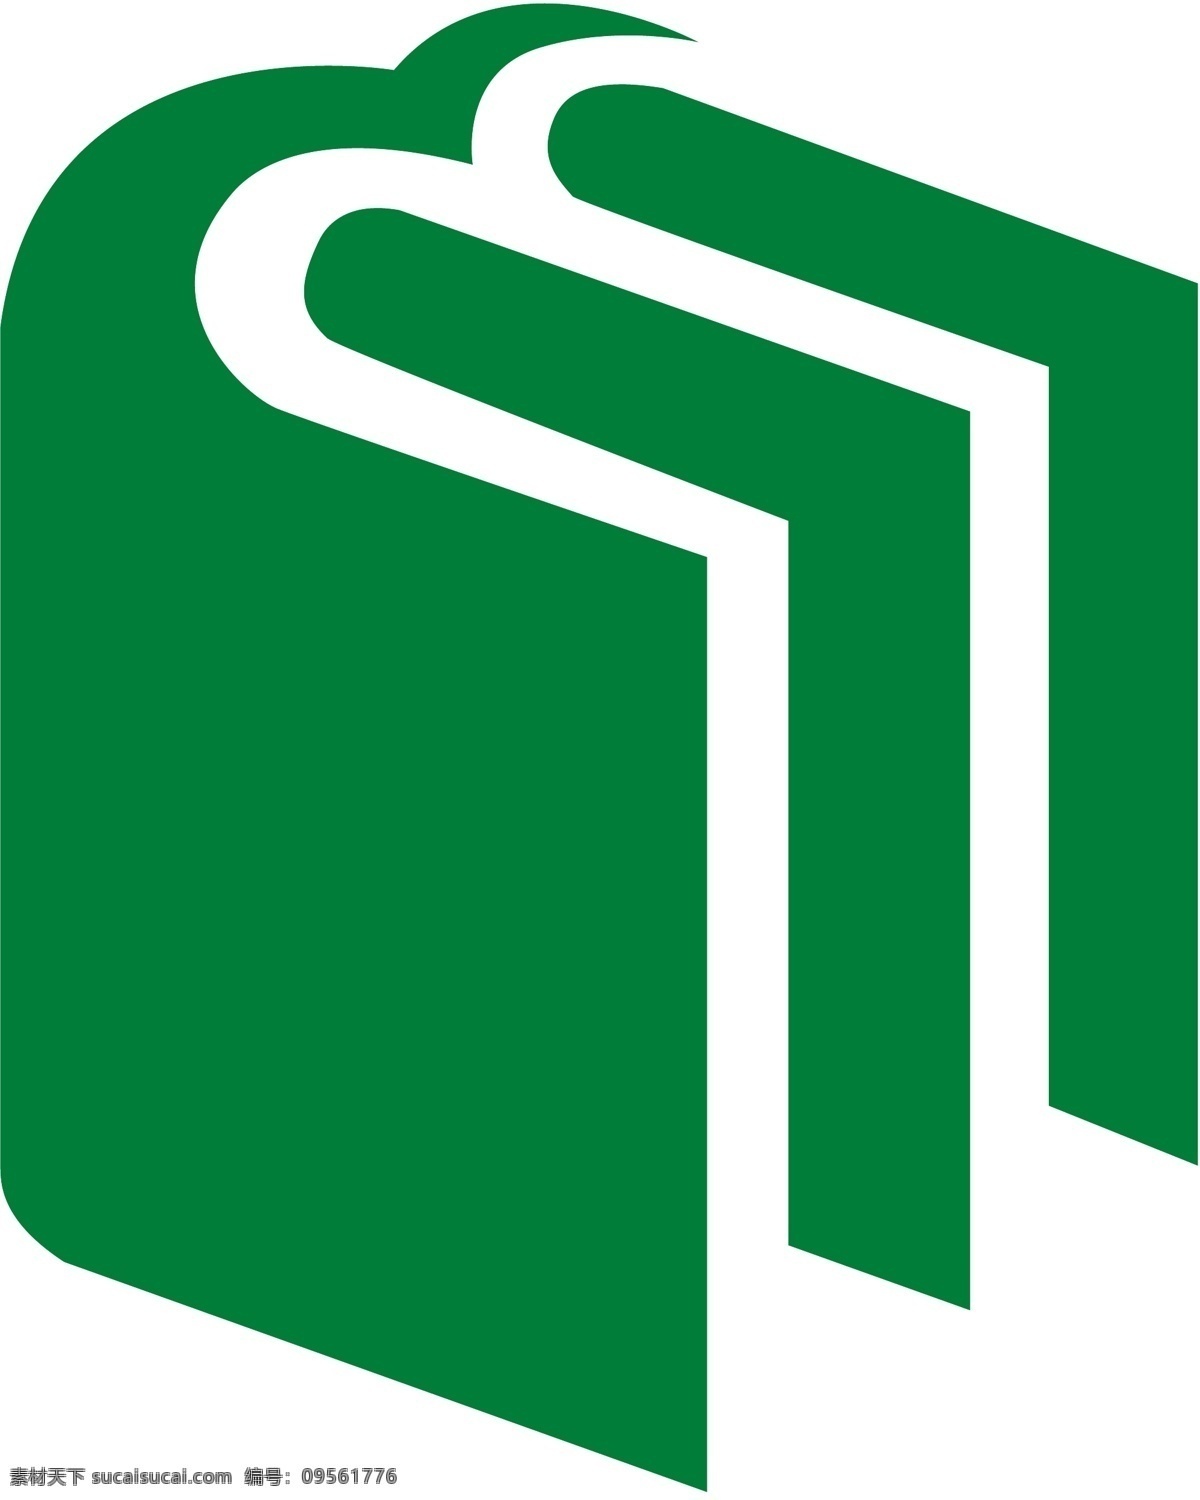 民族出版社 logo eps格式 标识标志图标 企业 标志 矢量图库